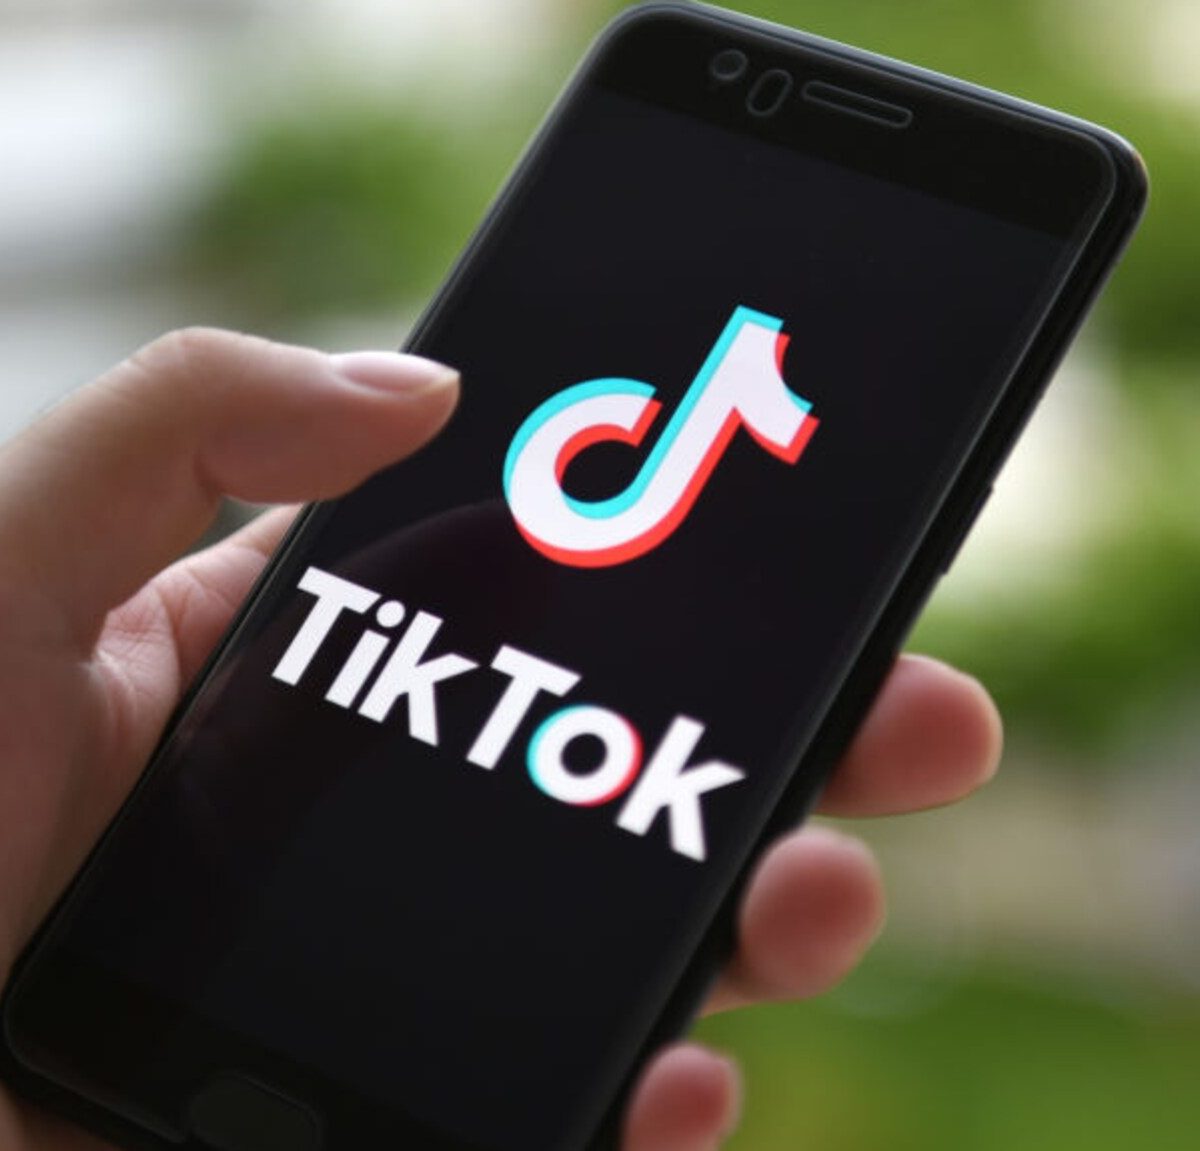 República Checa califica de amenaza para la seguridad la aplicación TikTok